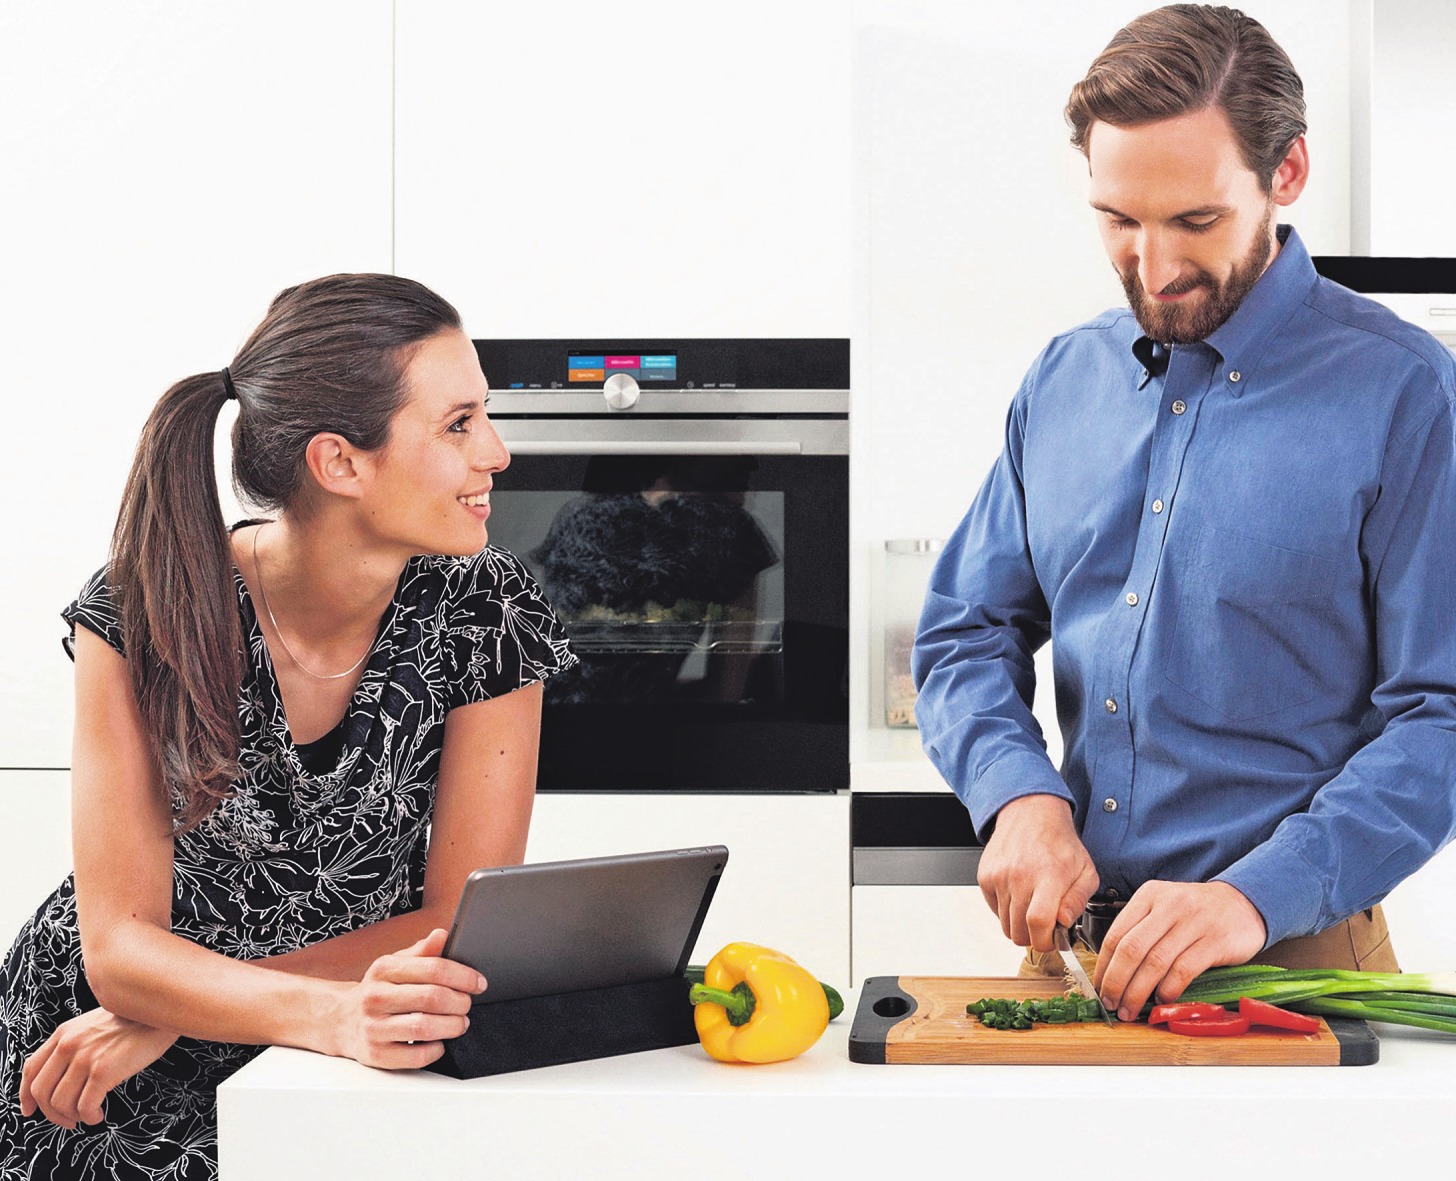 App, Tablet und vernetzte Hausgeräte eröffnen neue Dimensionen bei den Arbeiten rund ums Kochen. Fotos: AMK